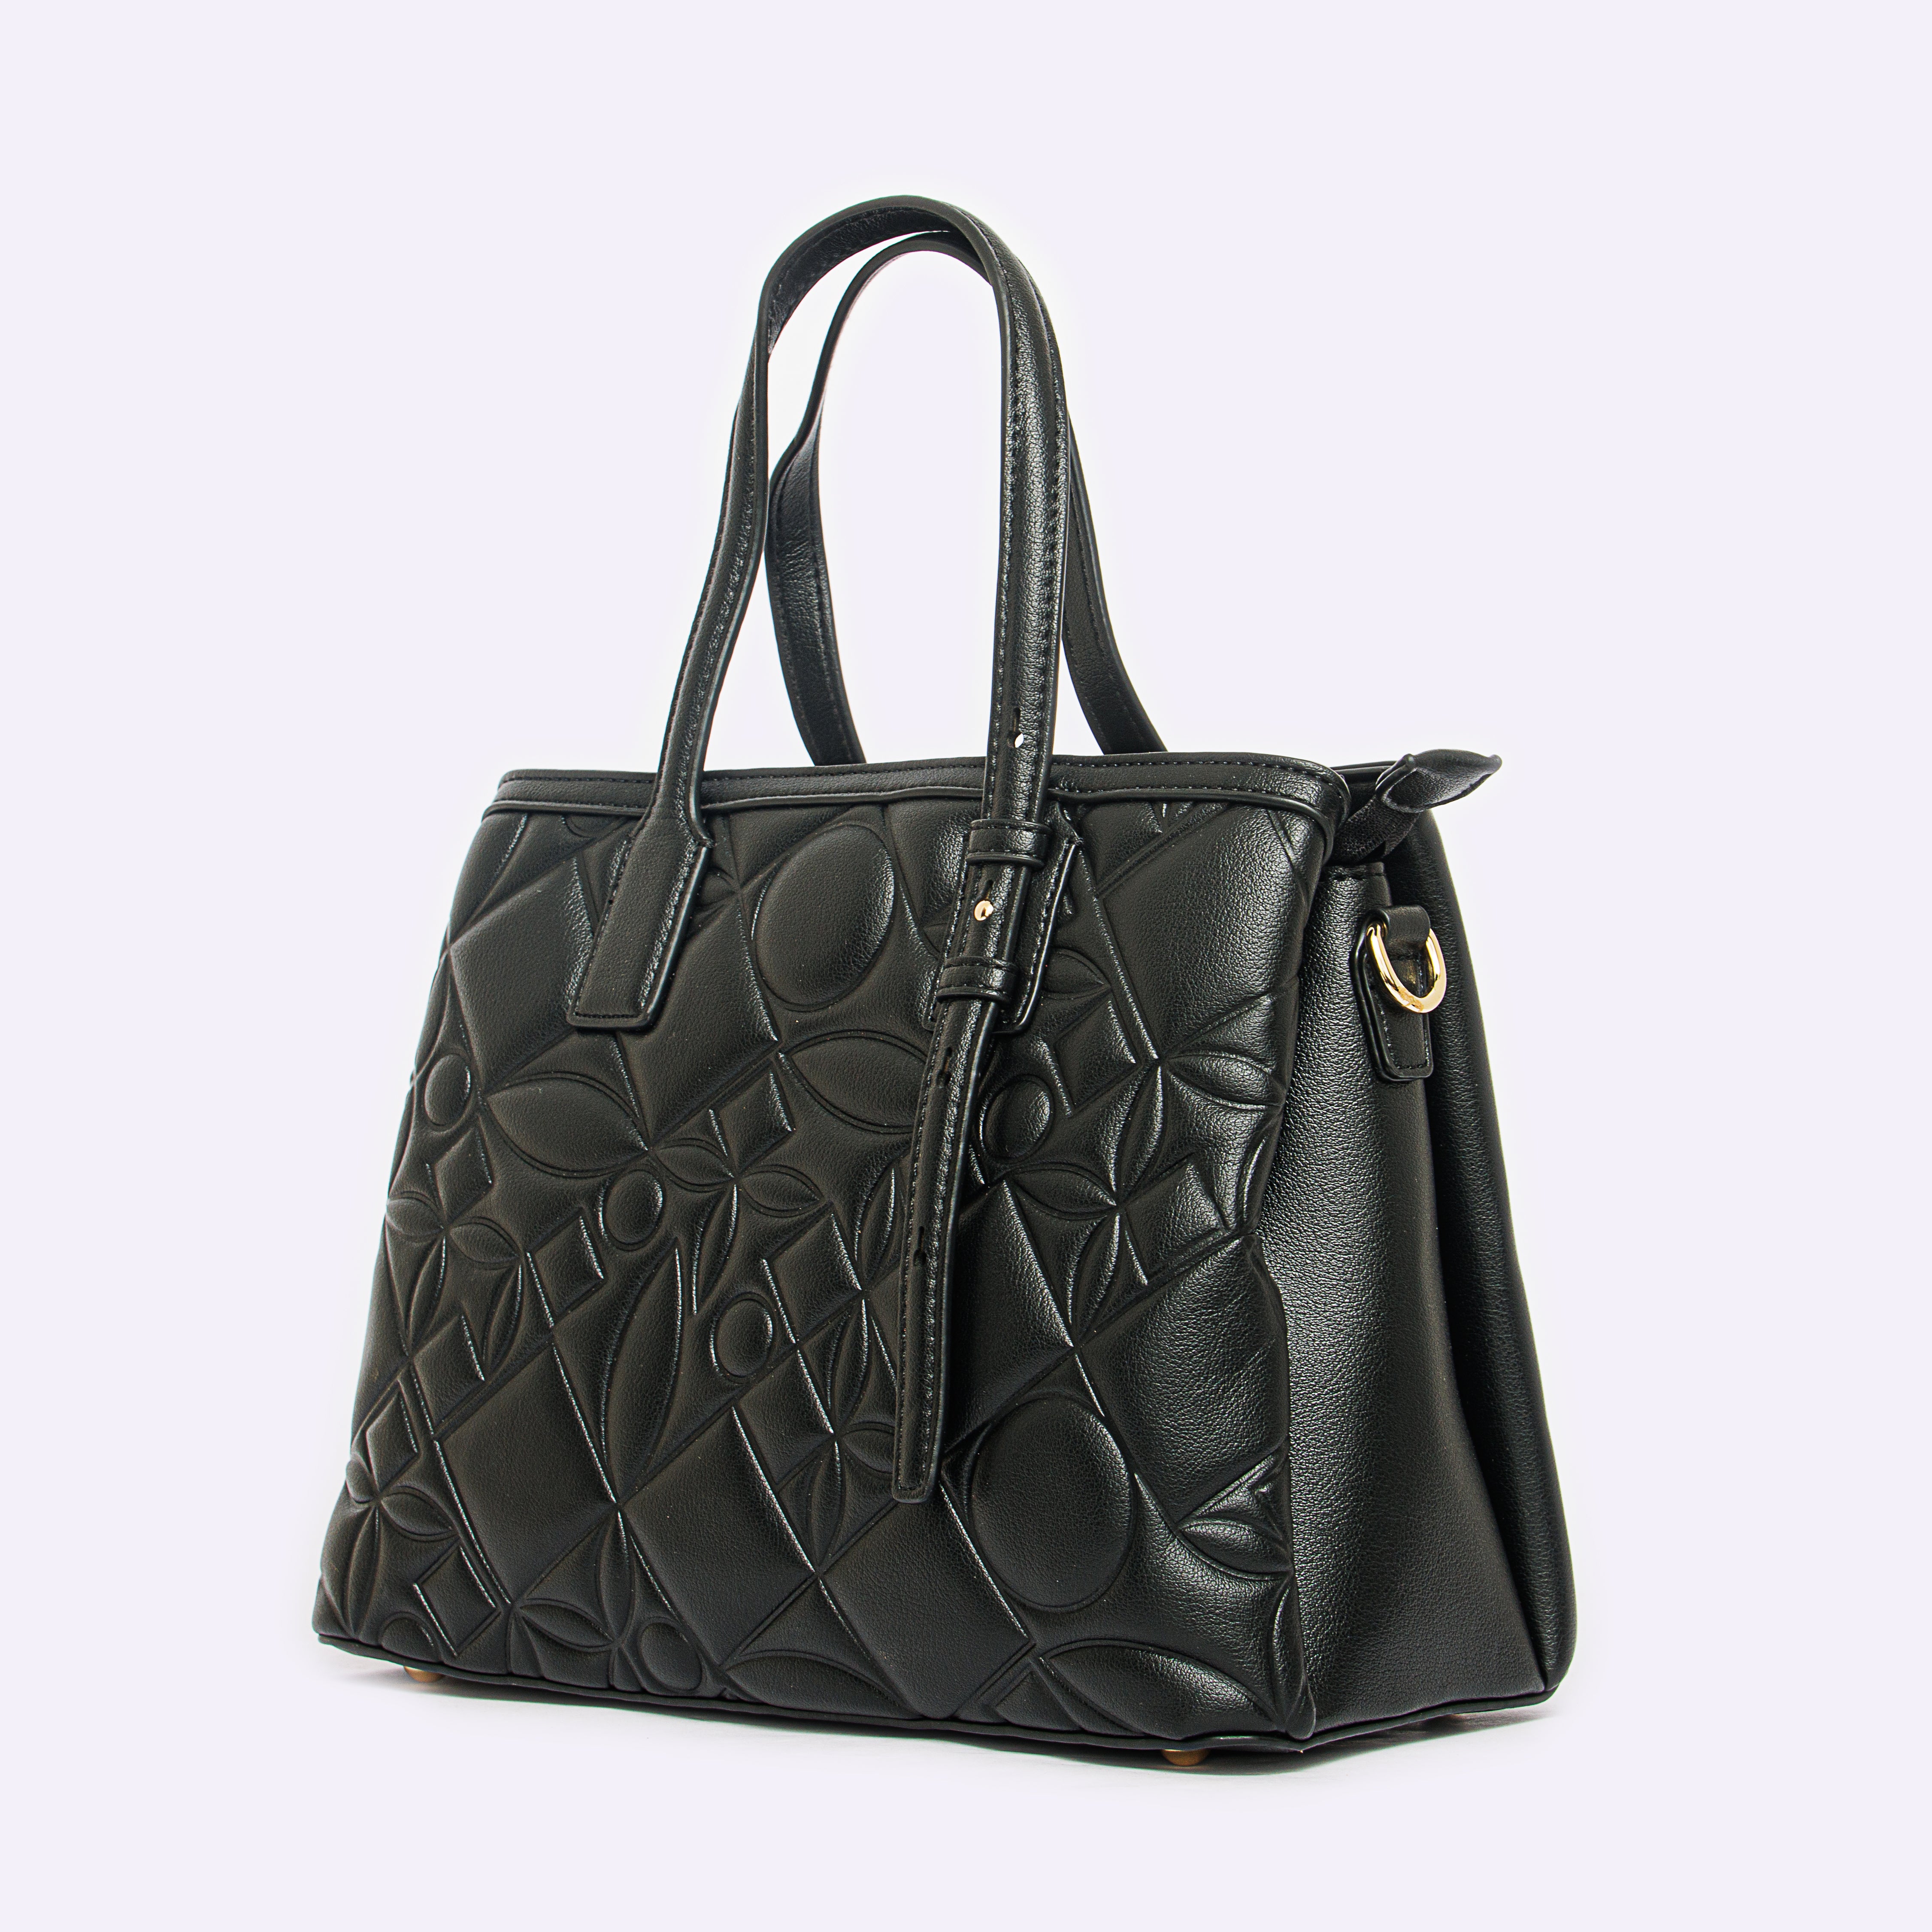 Shoeroom Woman Handbags B1413